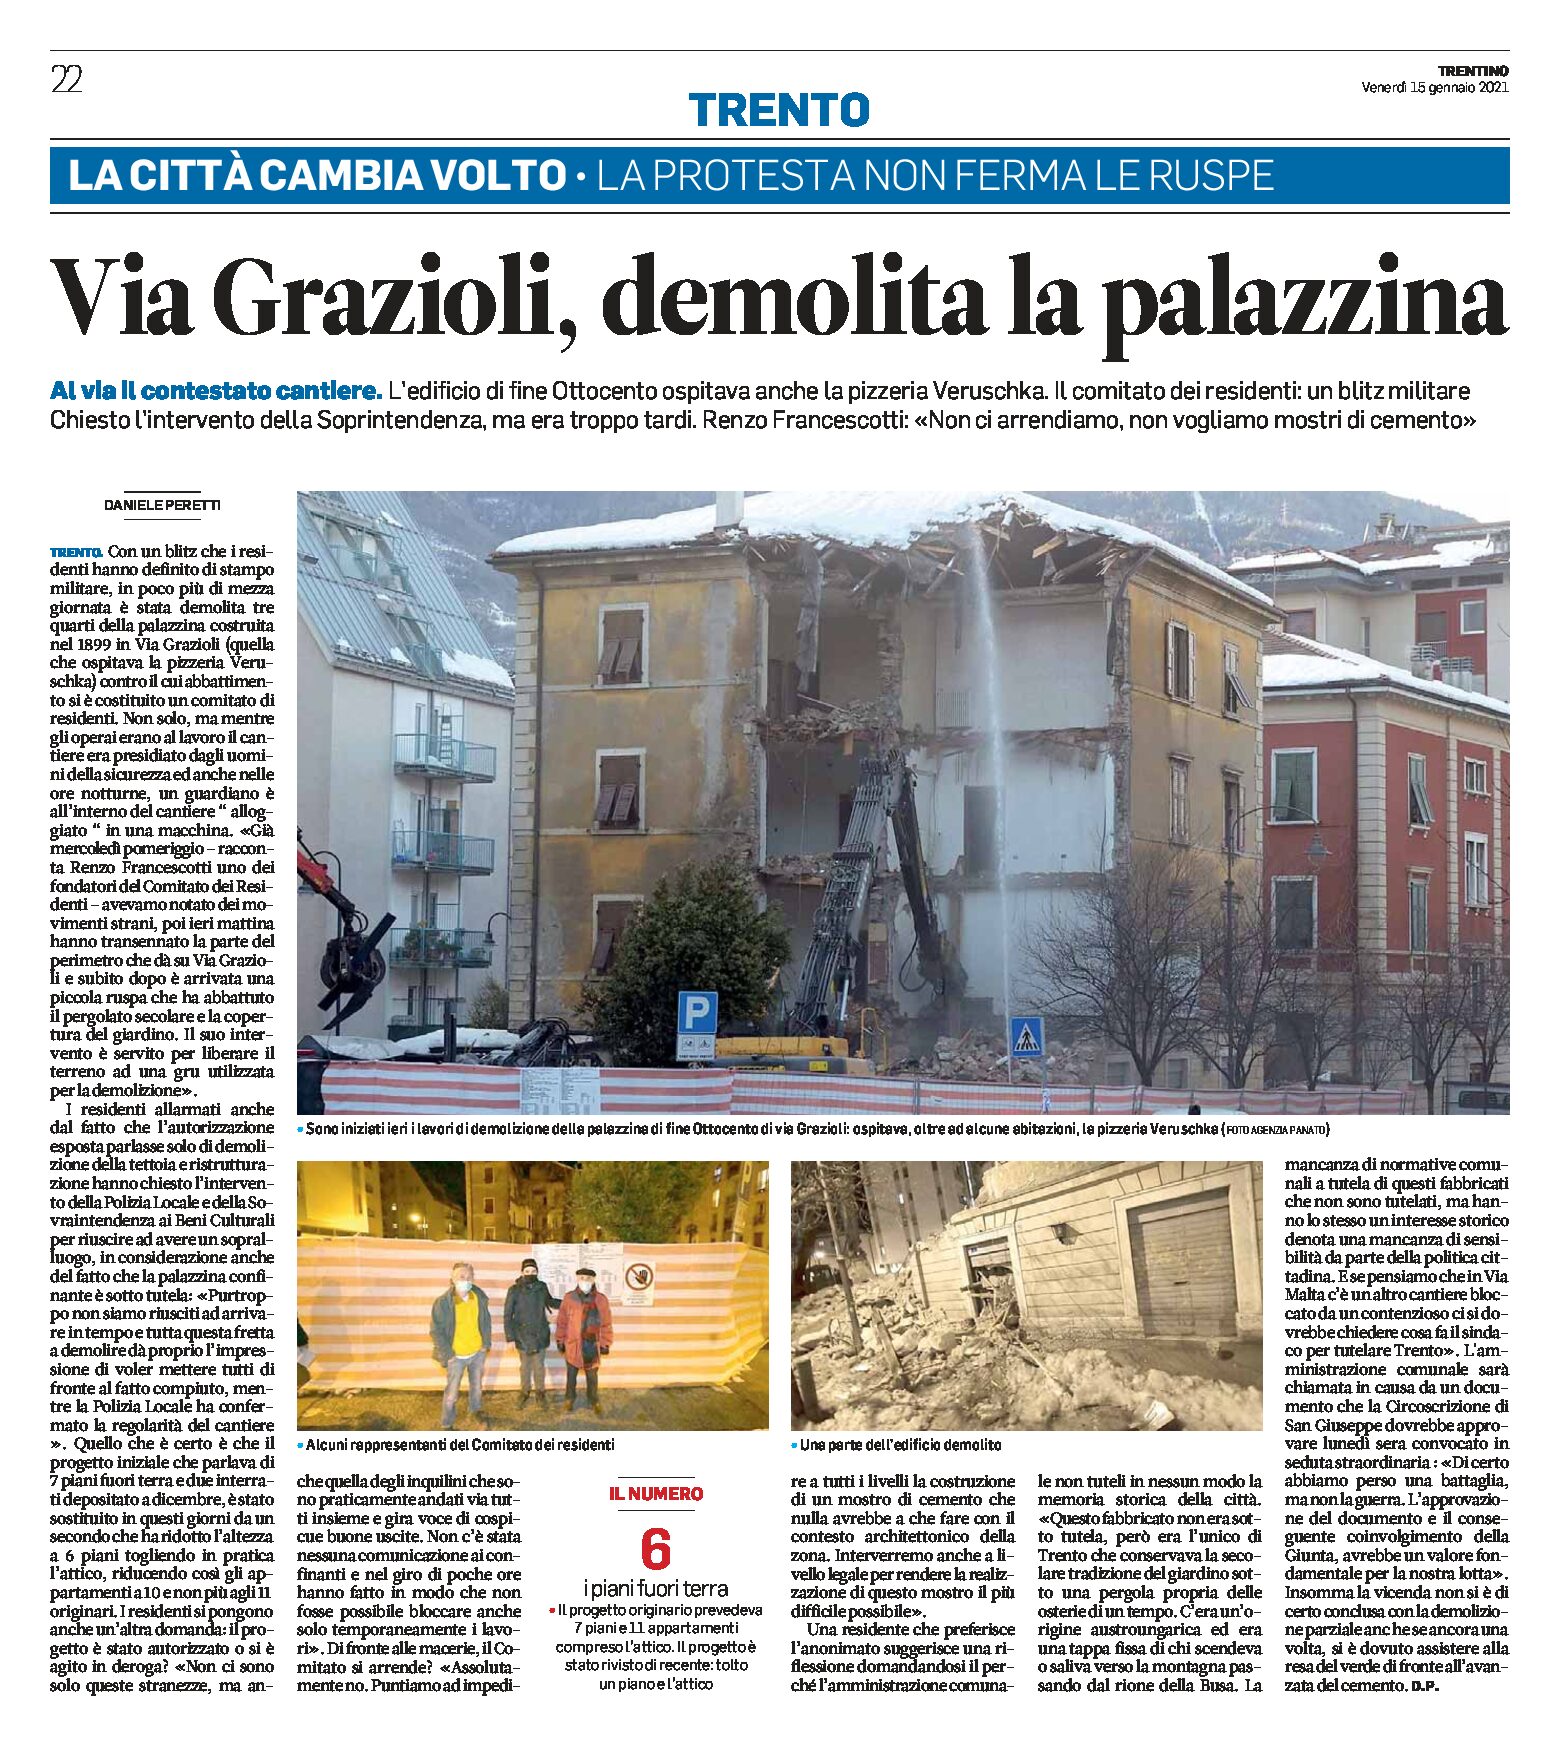 Trento, via Grazioli: demolita la palazzina di fine ottocento